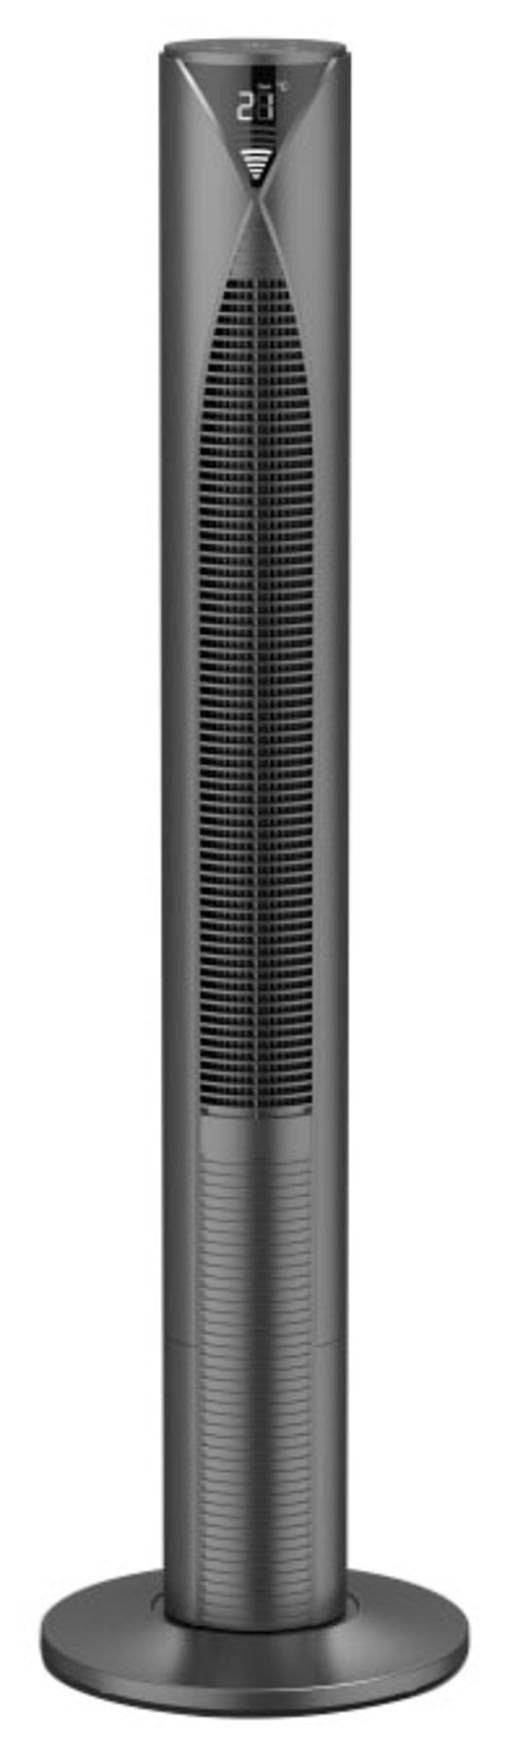 Hama Standventilator Smarter Standventilator 3 Fernbedienung Geschwindigkeitsstufen, Standby 117cm, Modus energiesparend Timer, Turm, mit mit Displayanzeige